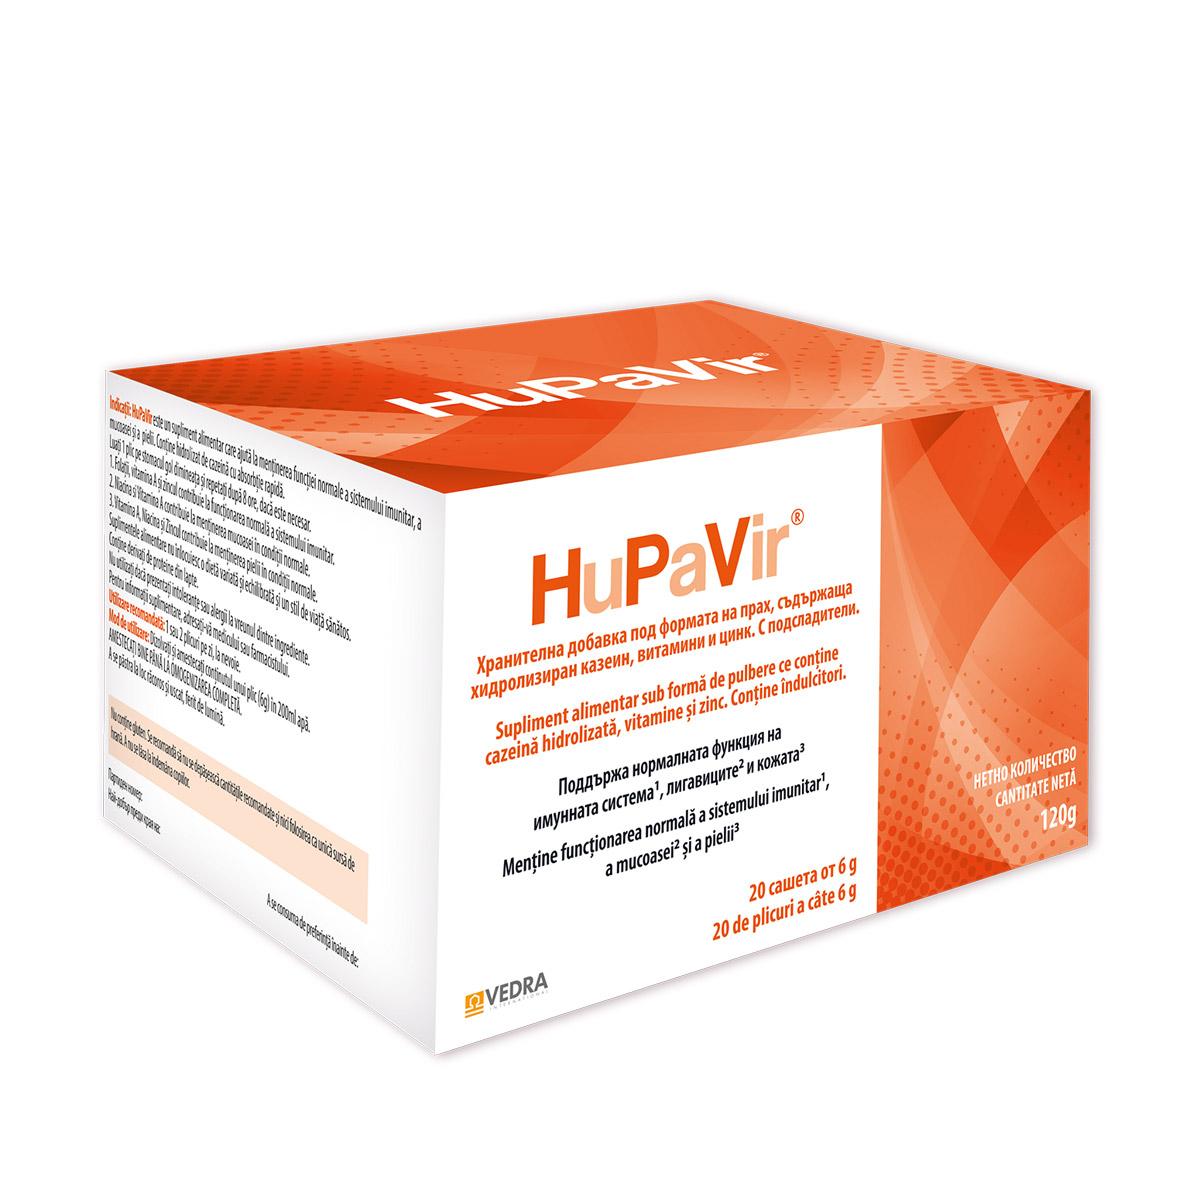 Selected image for VEDRA INTERNATIONAL Preparat za jačanje imunog sistema i prevenciju u borbi protiv HPV virusa 20/1 127025